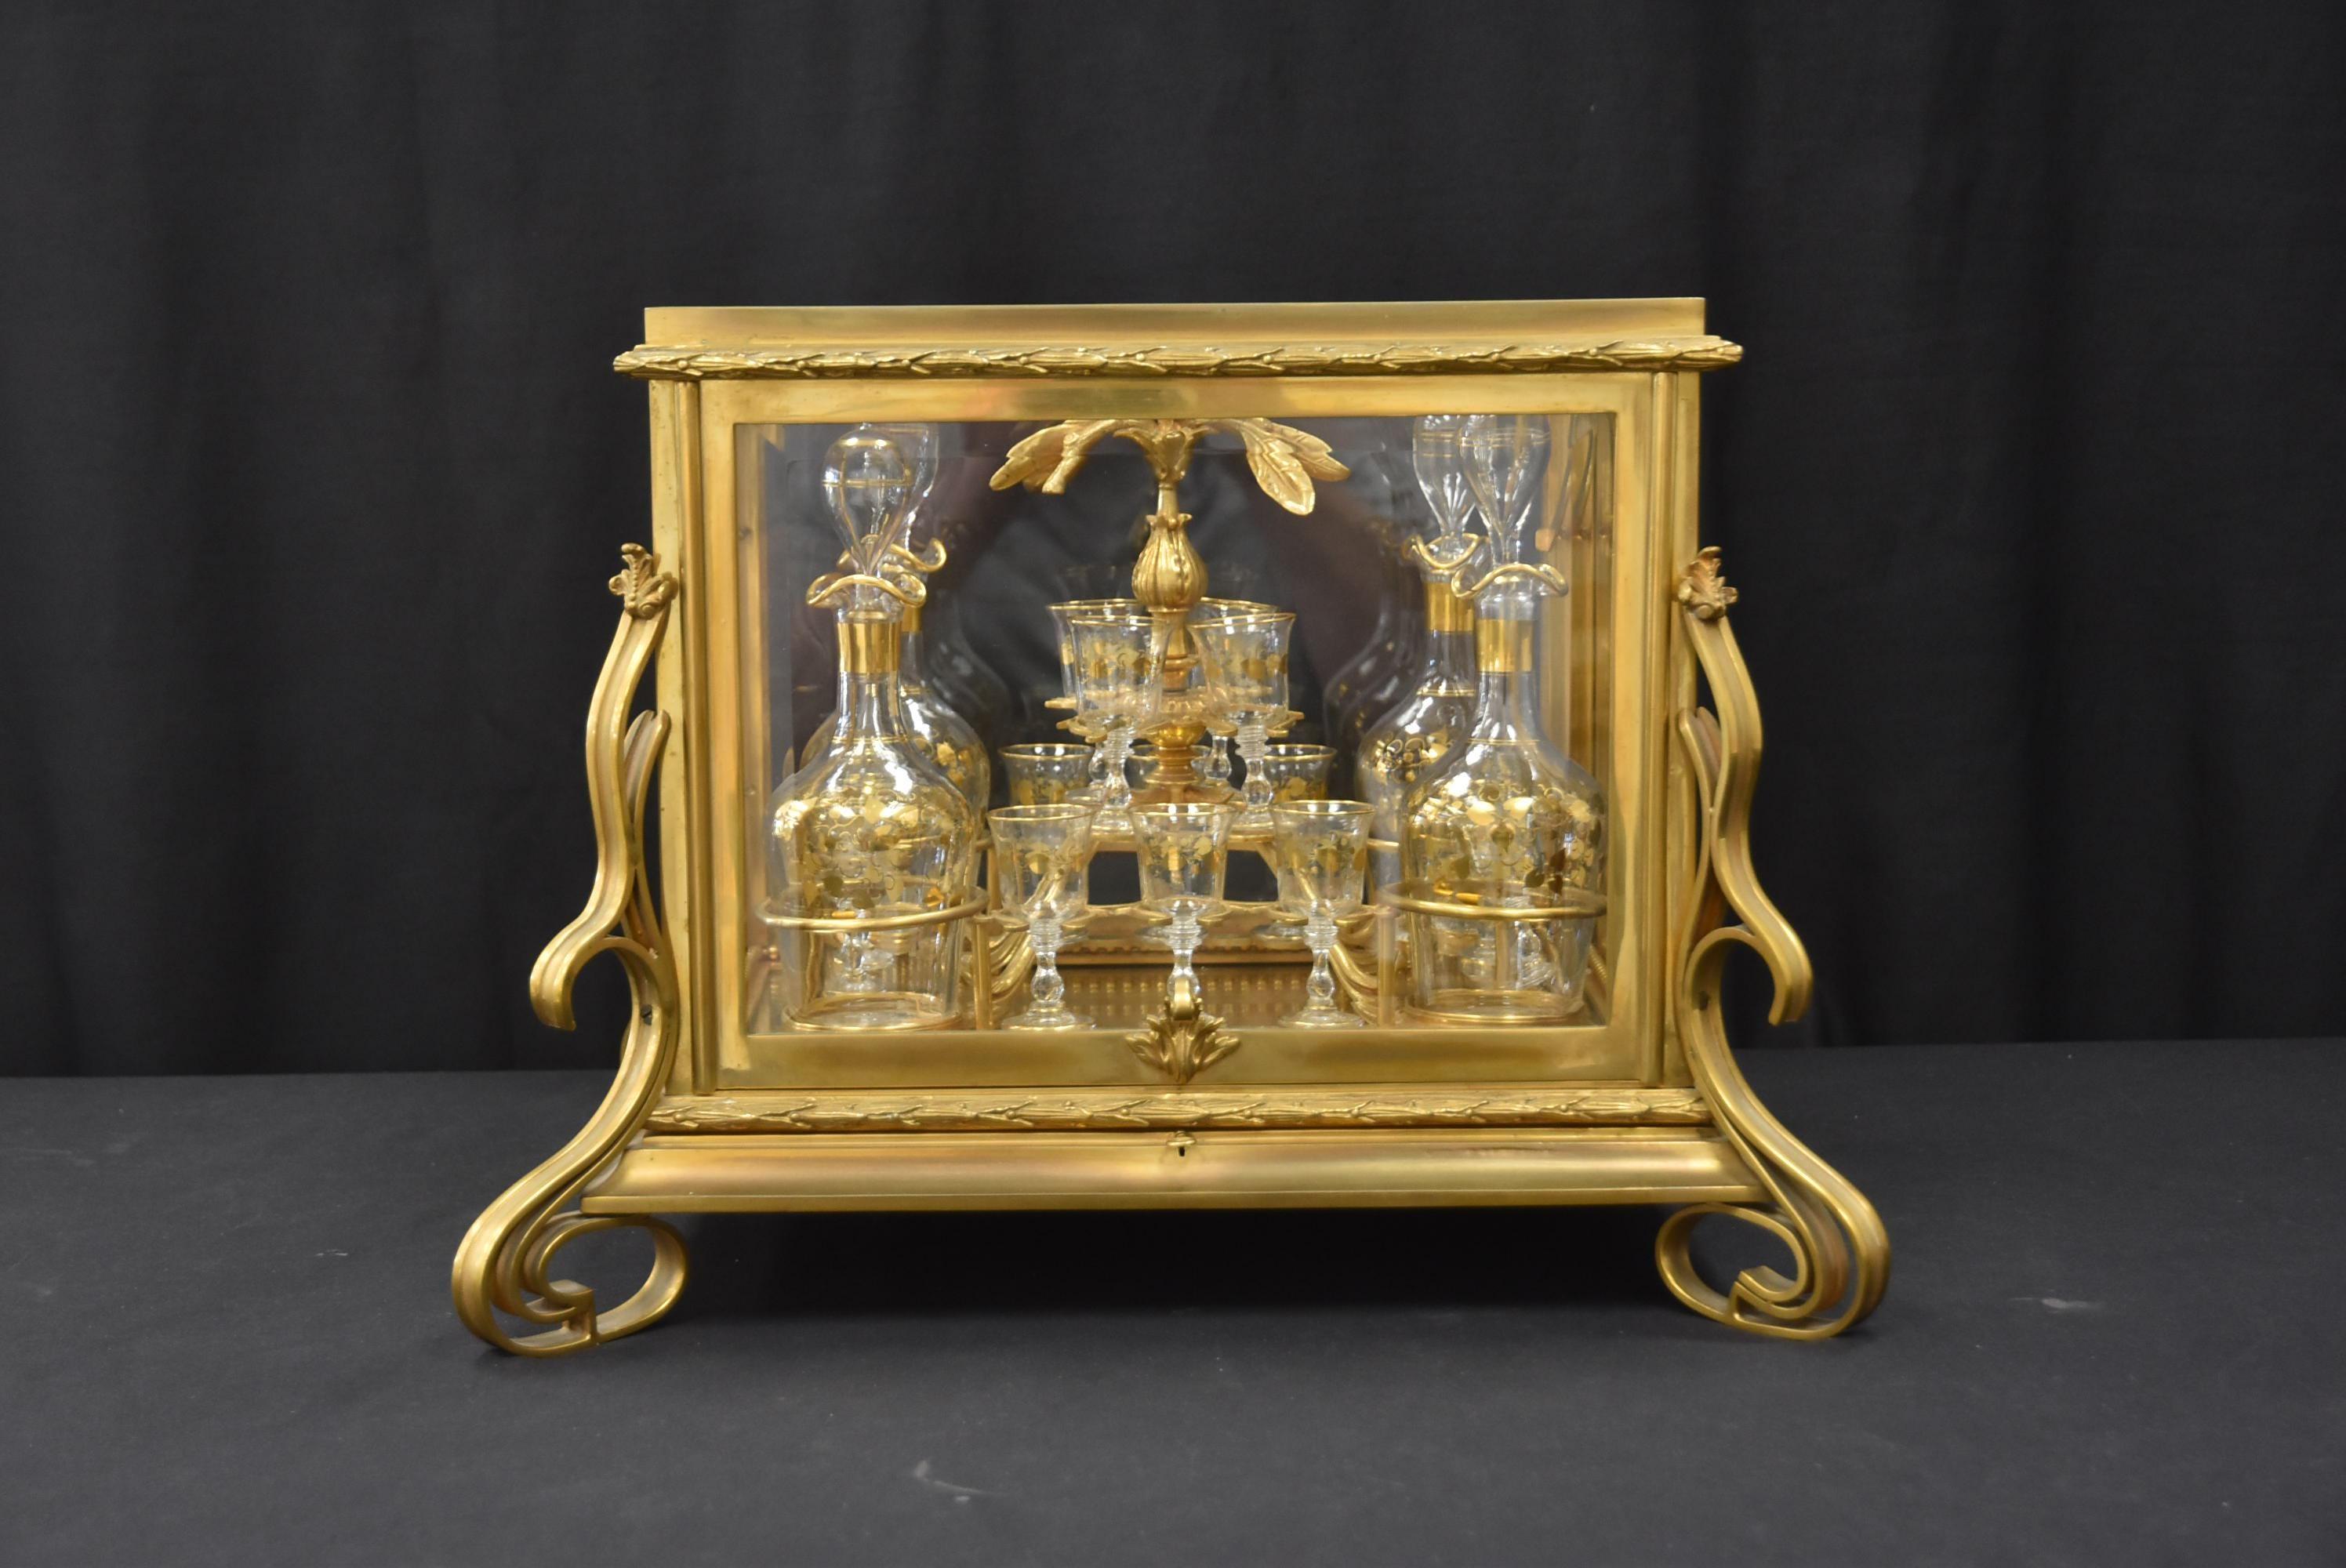 Ensemble de tantale en verre et bronze français du 19ème siècle avec (4) carafes en verre décorées d'or et (14) verres à cordiaux dans un insert en bronze ajusté, dans un coffret en verre et bronze français - Dimensions : 18